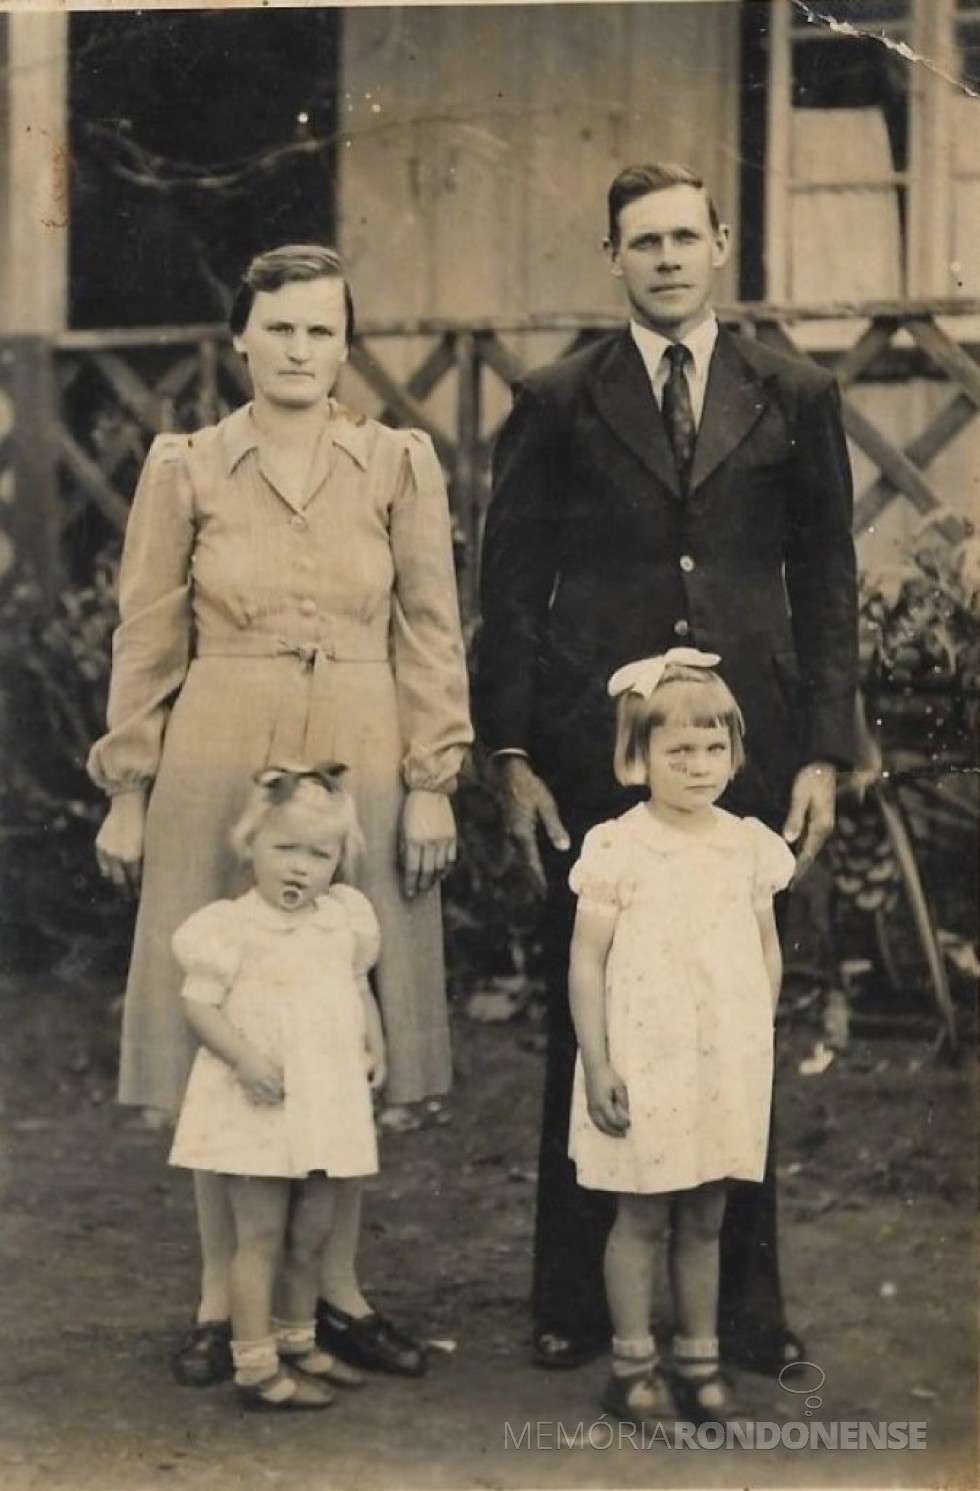 Rosa Olga e Guilherme Frederico Balkau, pioneiros rondonenses, fotografados em 1944, com as filhas Ilone e Hildegard, em Candeia, município de Santa Rosa (RS). 
Imagem: Acervo da família. - FOTO 5 - 